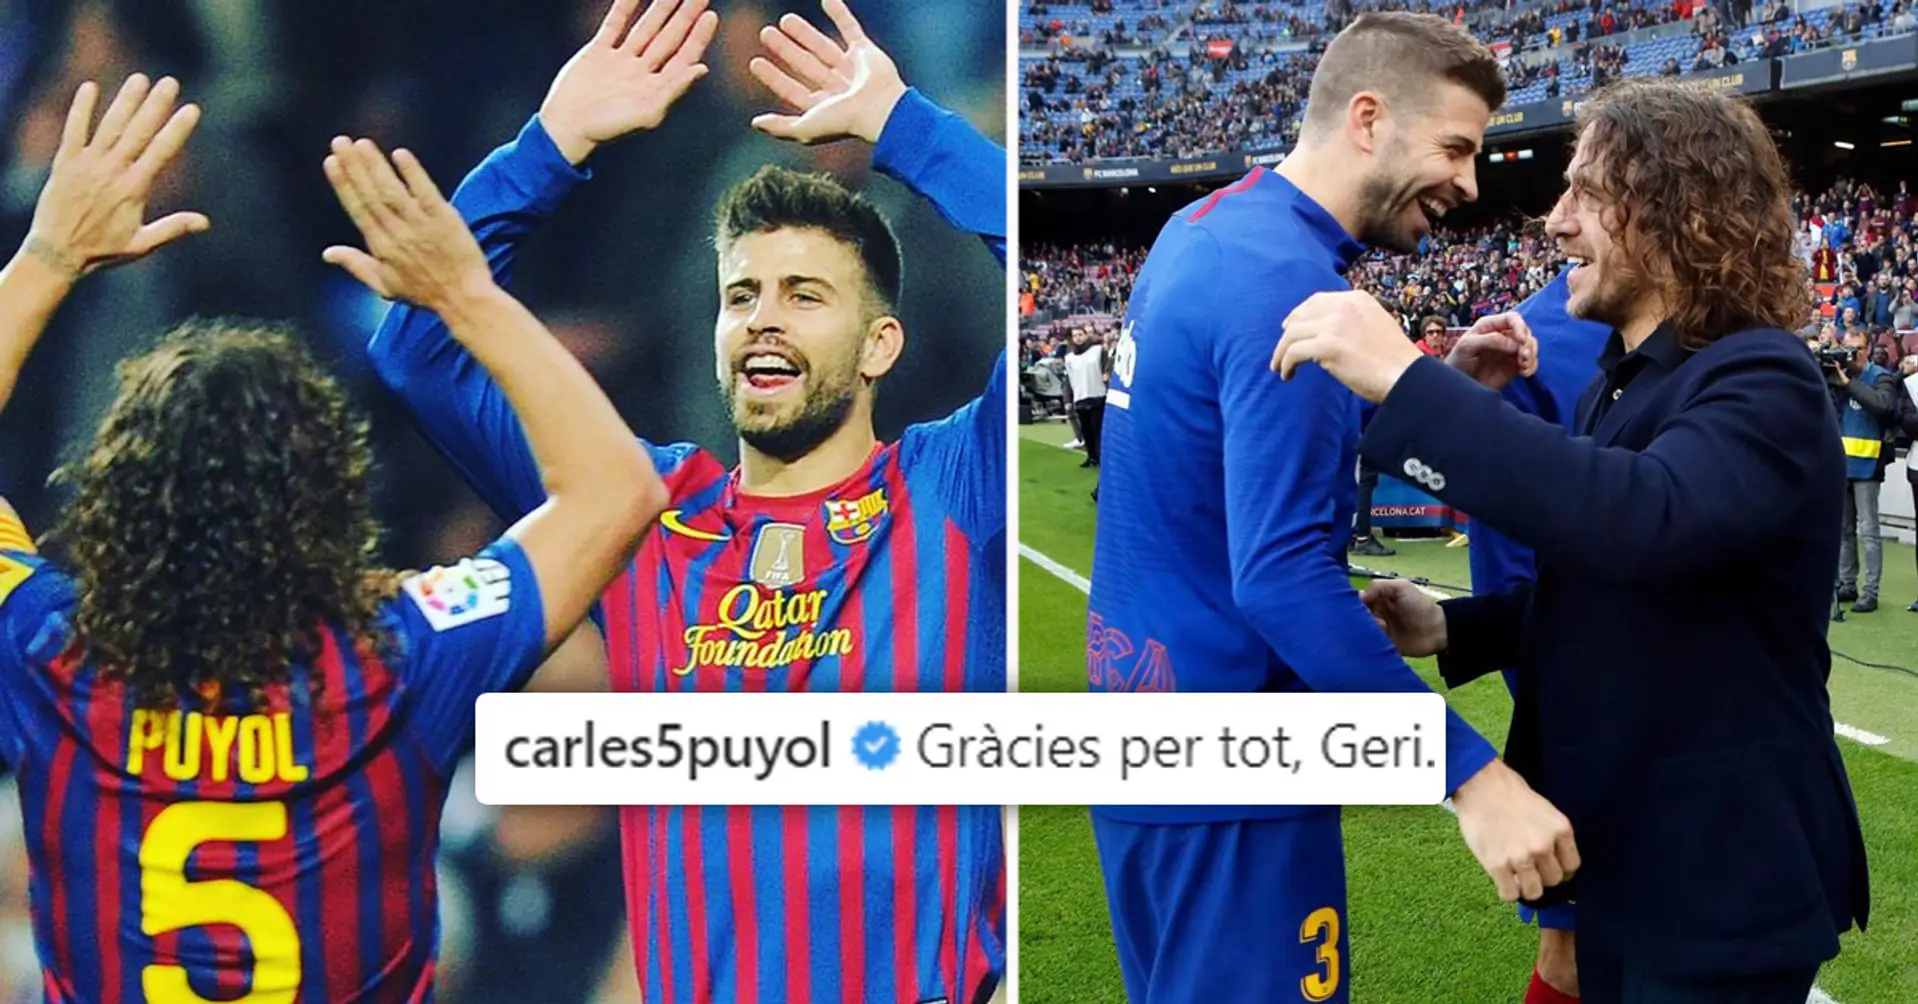 Die Reaktion von Carles Puyol auf das Karriereende von Gerard Pique: "Ich stehe unter Schock. Ich bin sehr stolz darauf, neben dir gespielt zu haben" 